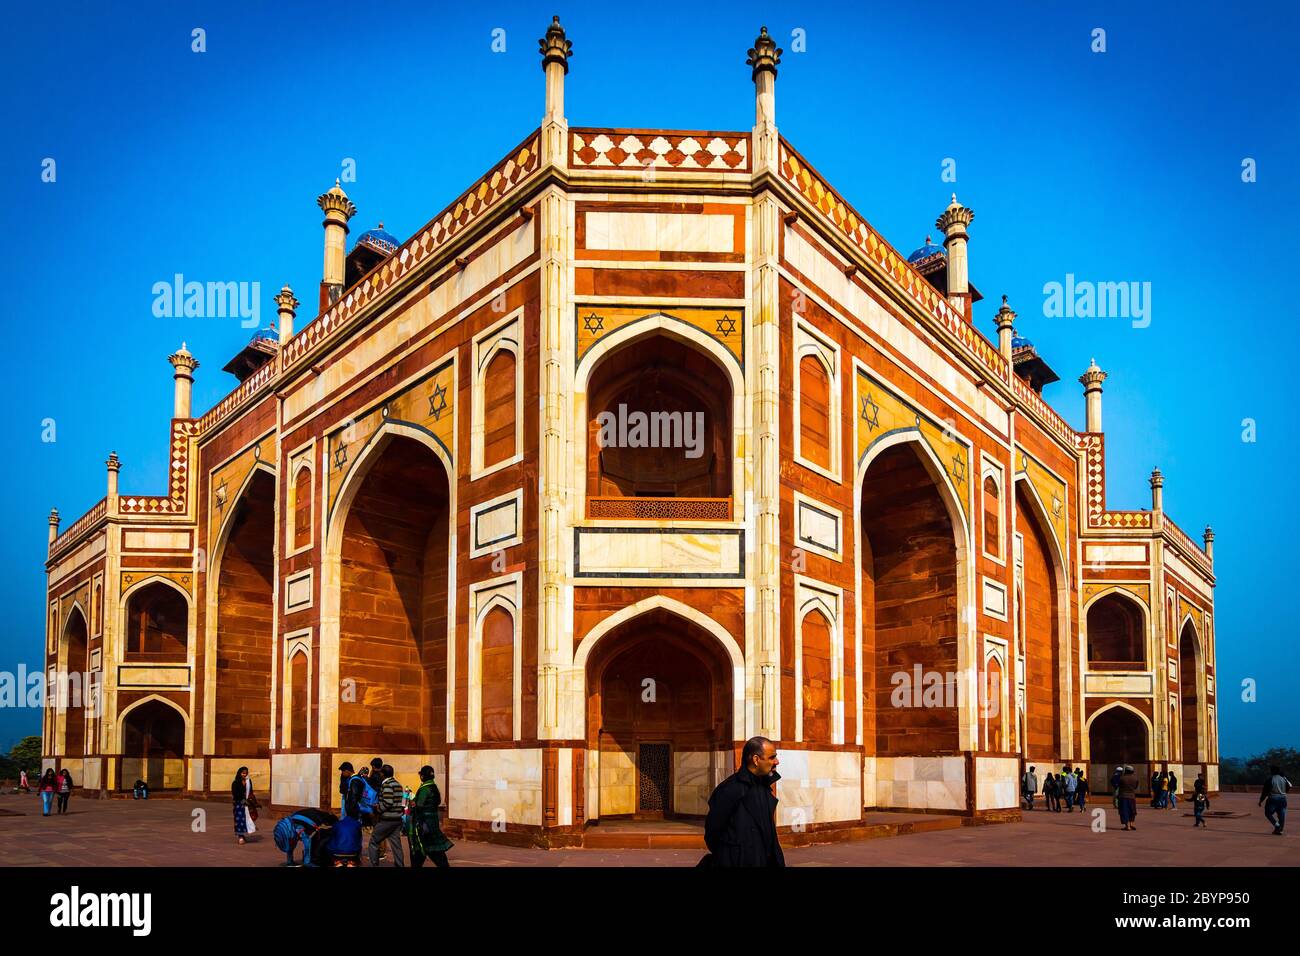 La Tomba di Humayun a Delhi, India. La Tomba di Humayun è anche famoso luogo turistico a Delhi. La gente del posto anche venuto a vedere questo grande architettura persiana Marvel. Foto Stock